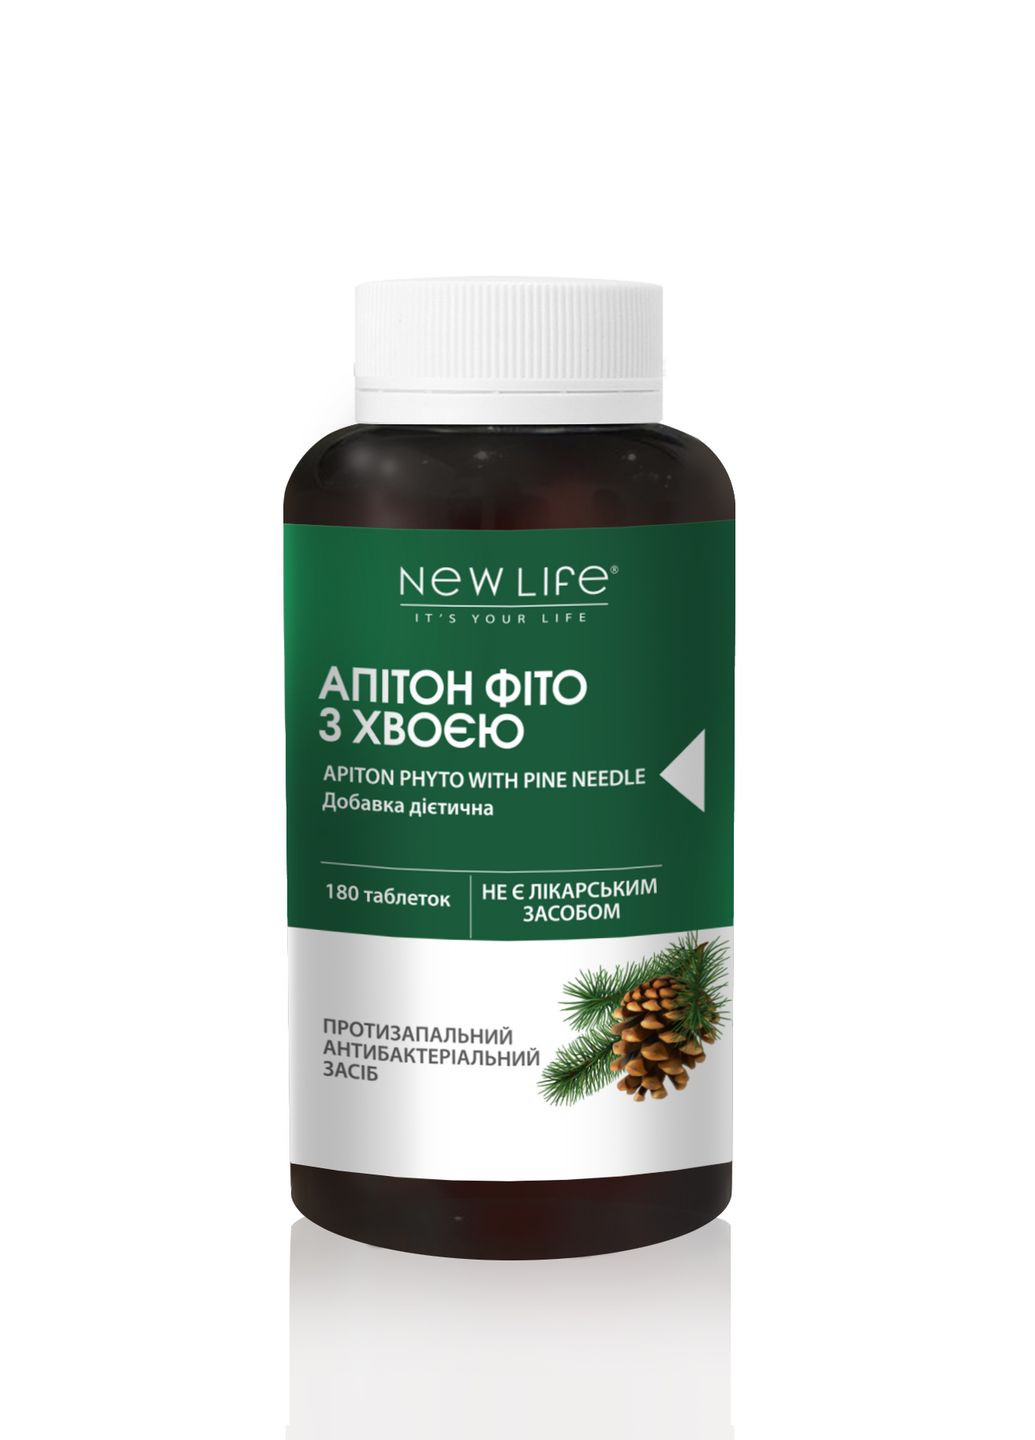 Диетическая добавка Апитон фито с хвоей - противовоспалительное, антибактериальное средство, 180 таблеток в баночке New LIFE (277369688)